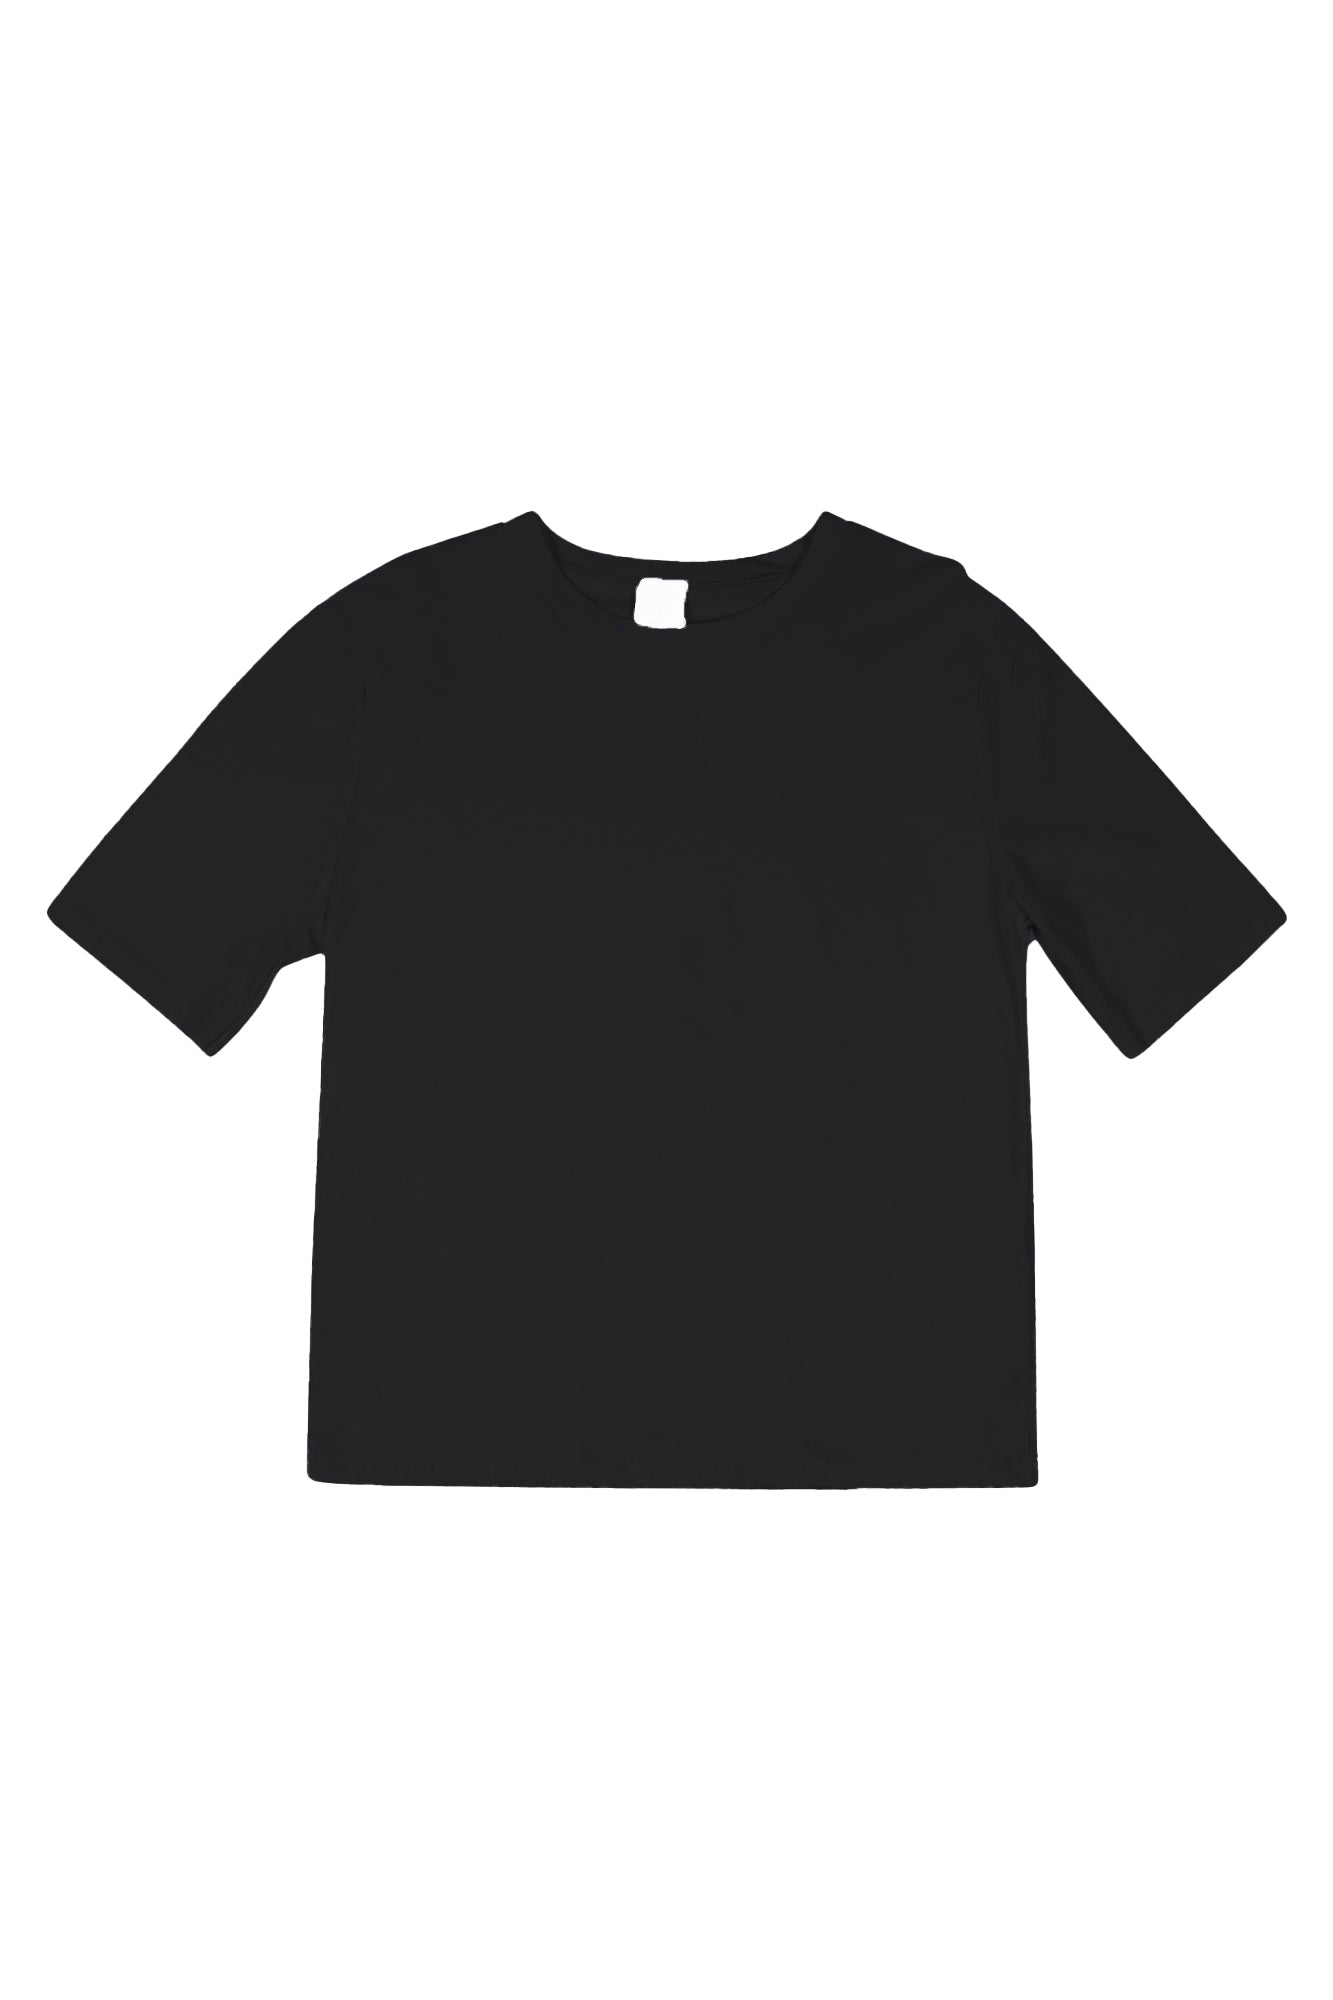 La Femme Blanche - T-shirt - 431477 - Nero